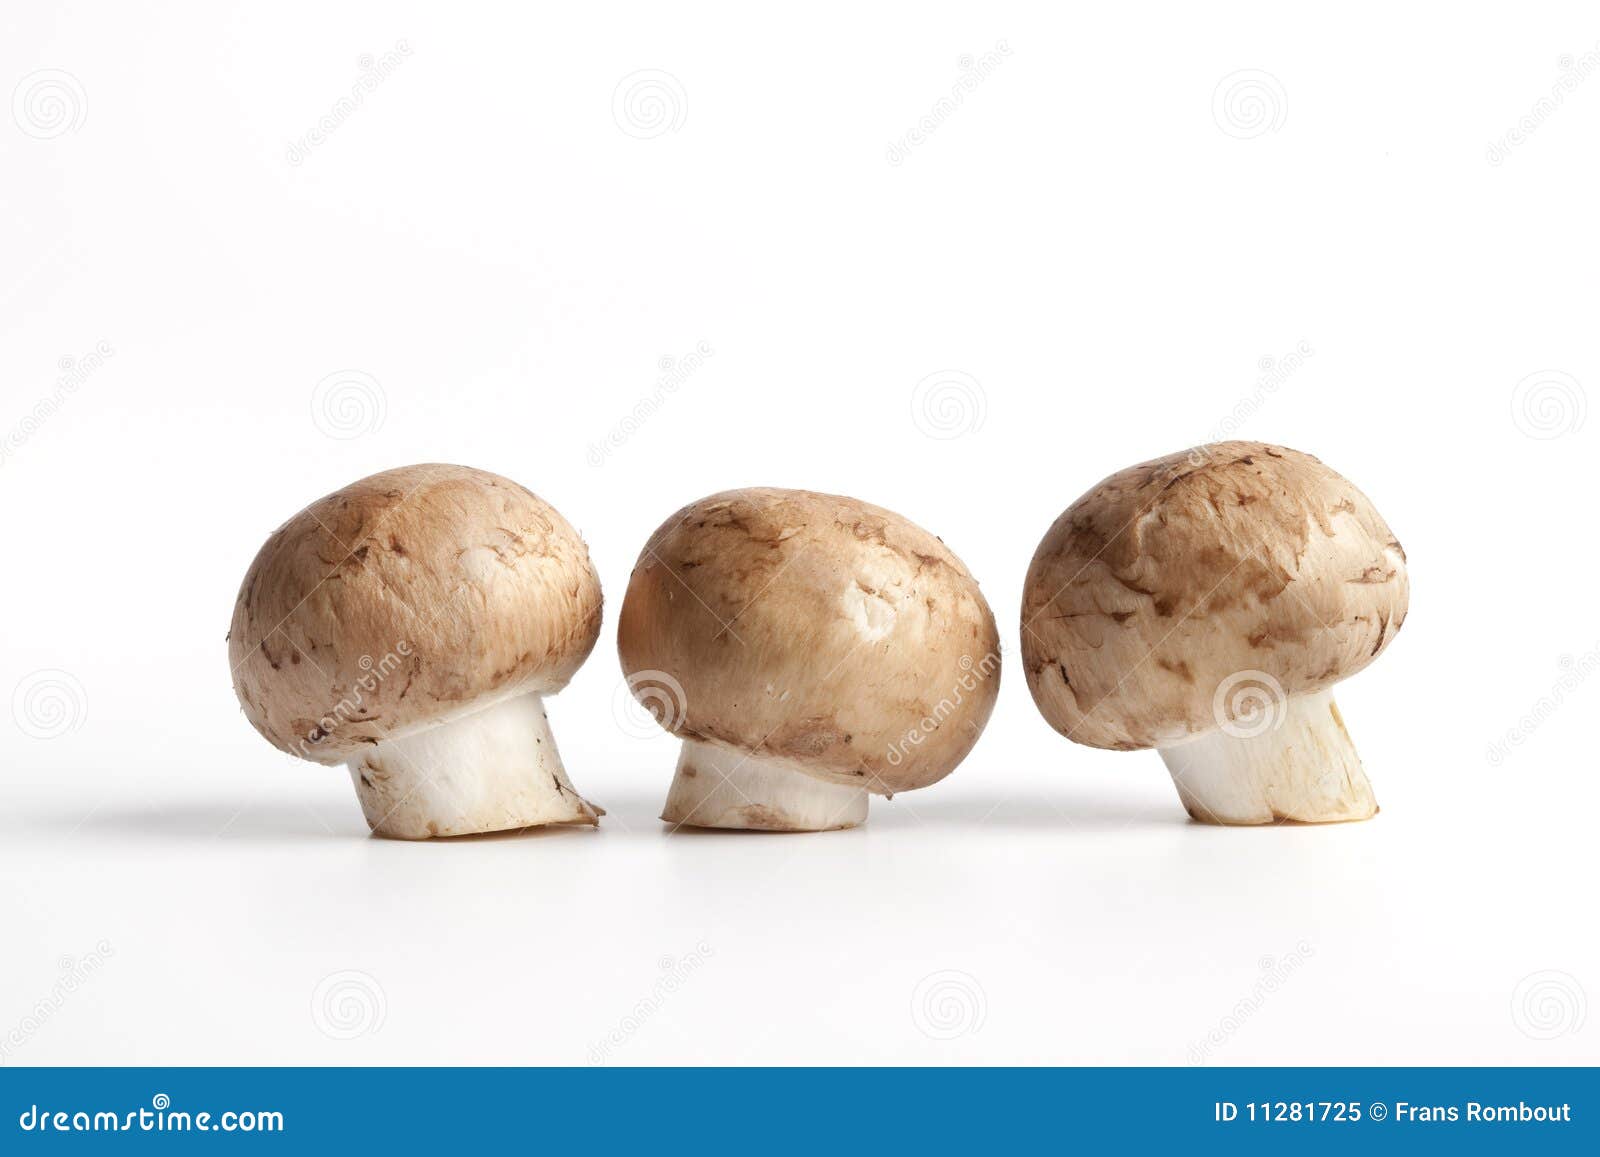 图片素材 : 性质, 秋季, 板栗, 落叶松, matsutake, 白色蘑菇, 蚝蘑, 可食用的蘑菇, shiitake, 药用蘑菇, 伞形 ...